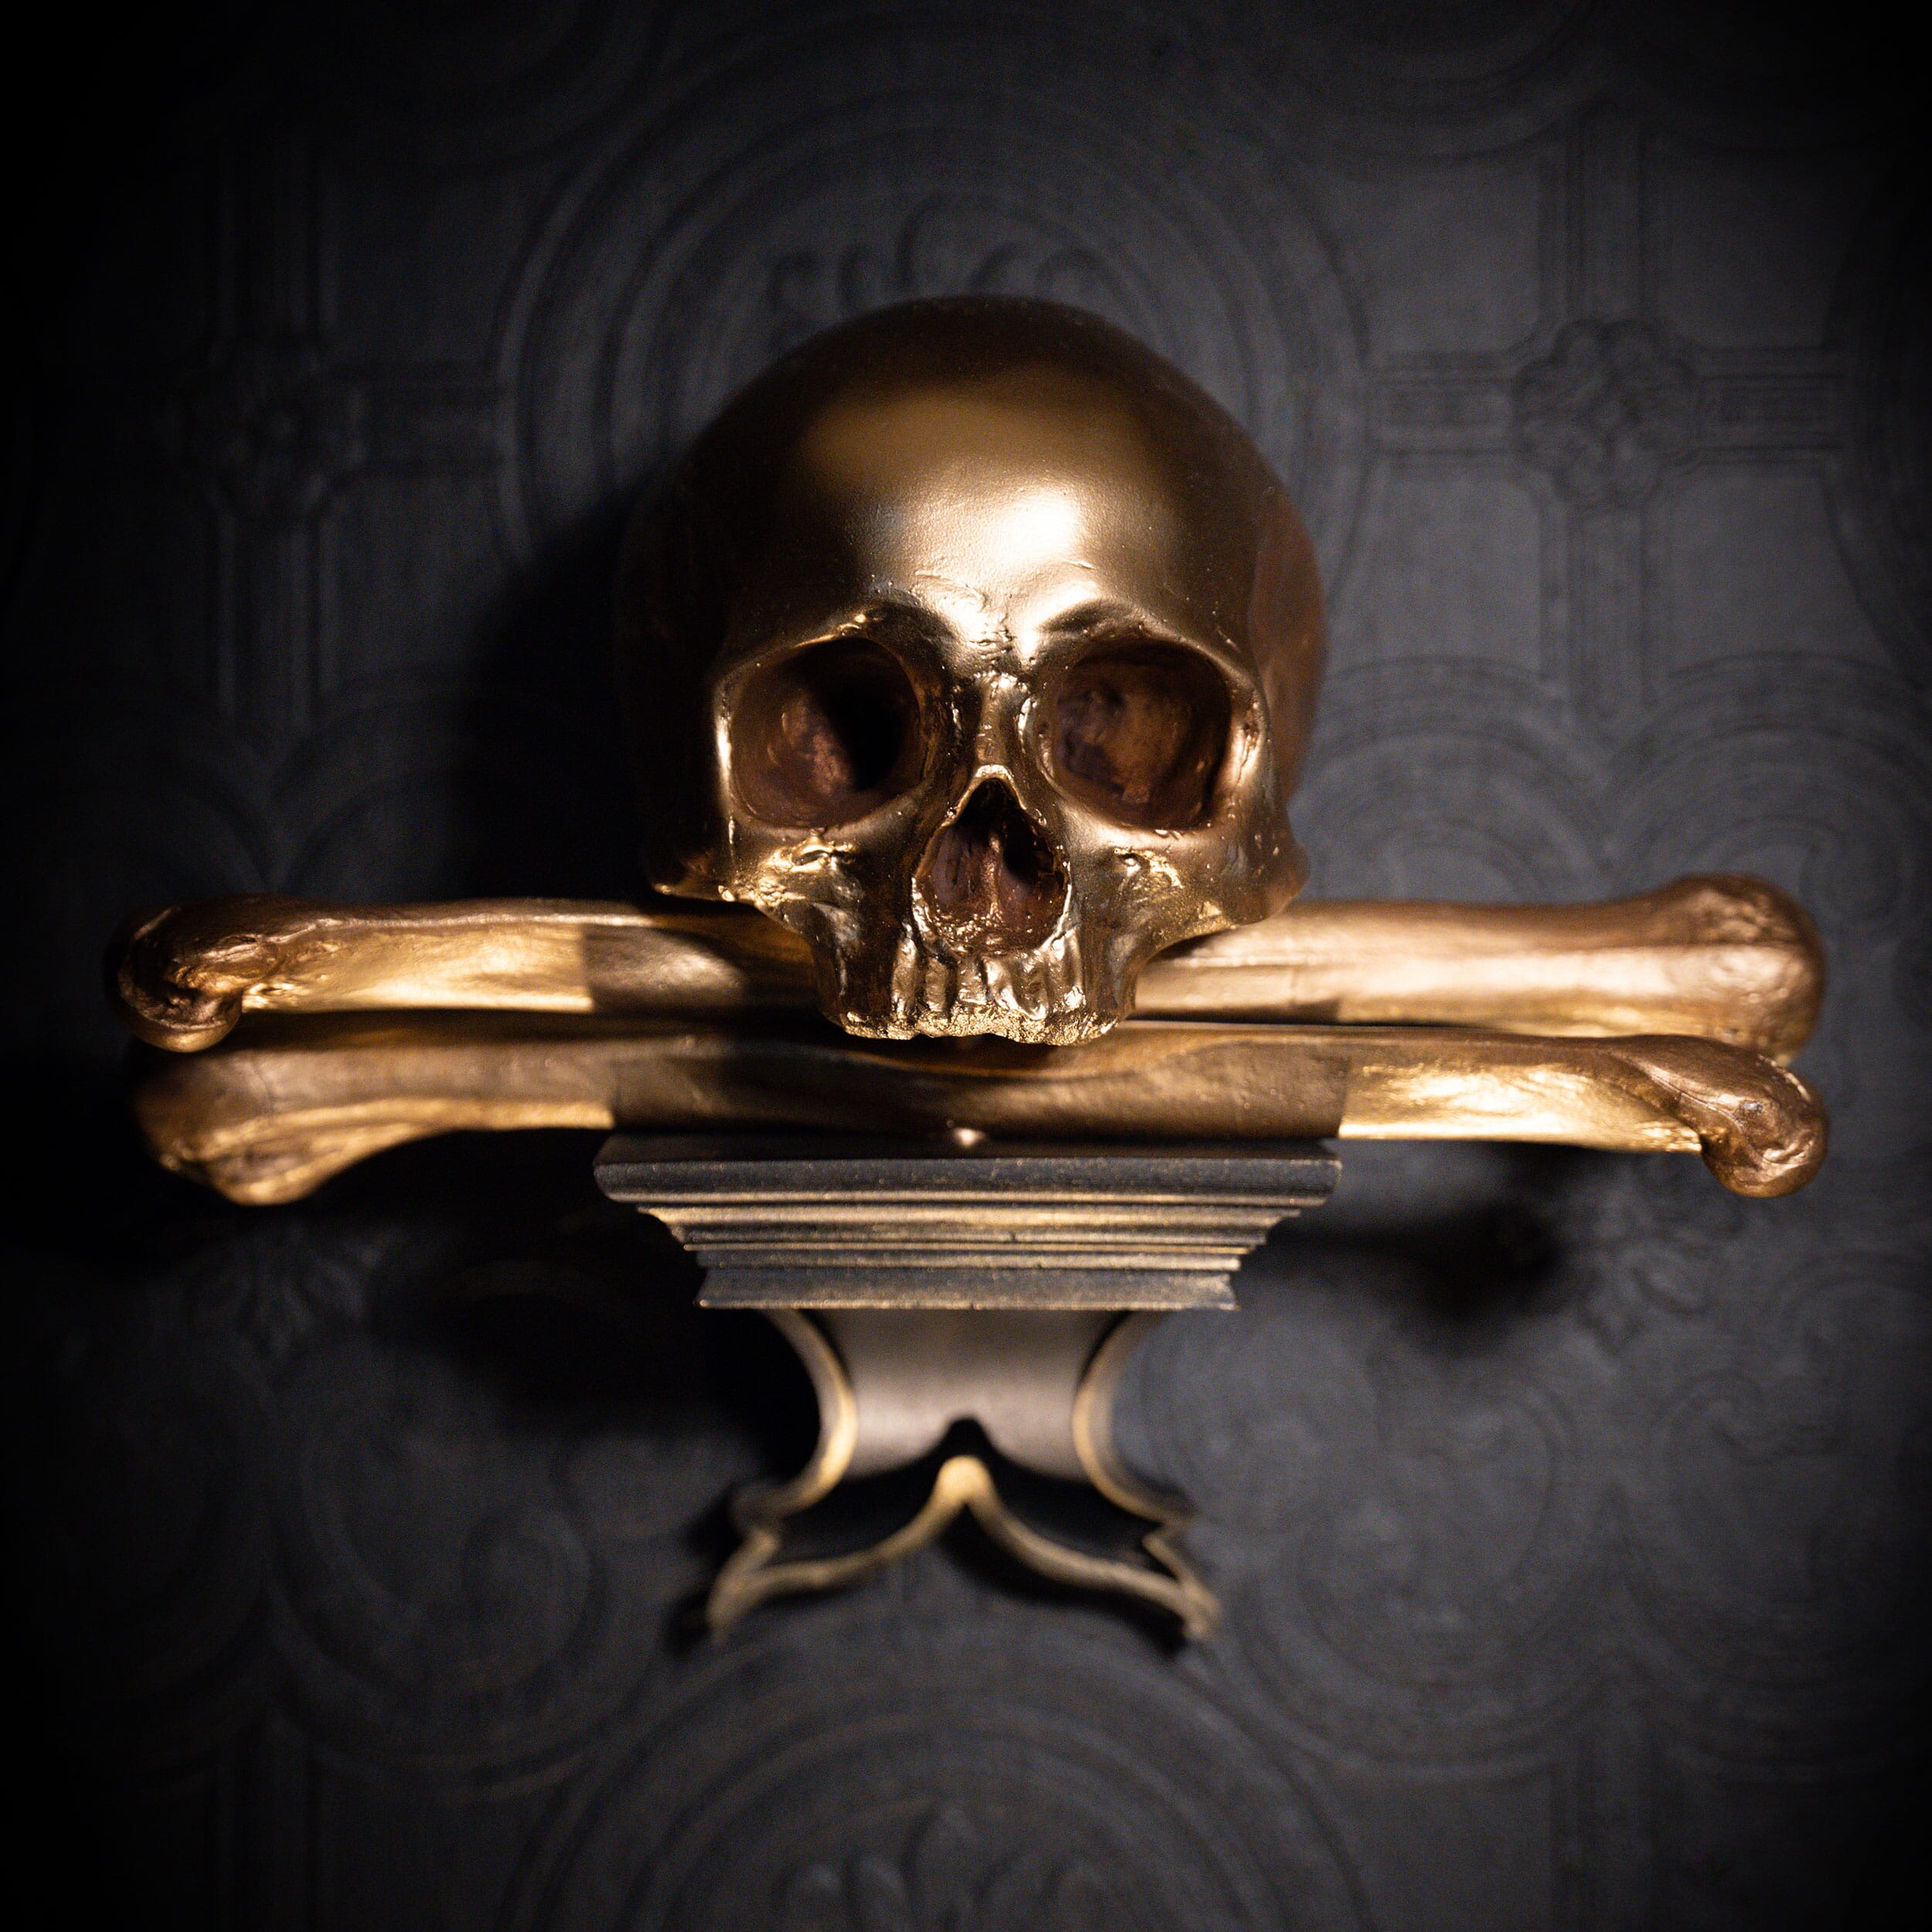 Ossuary skull corbel - The Blackened Teeth - Gothic decor